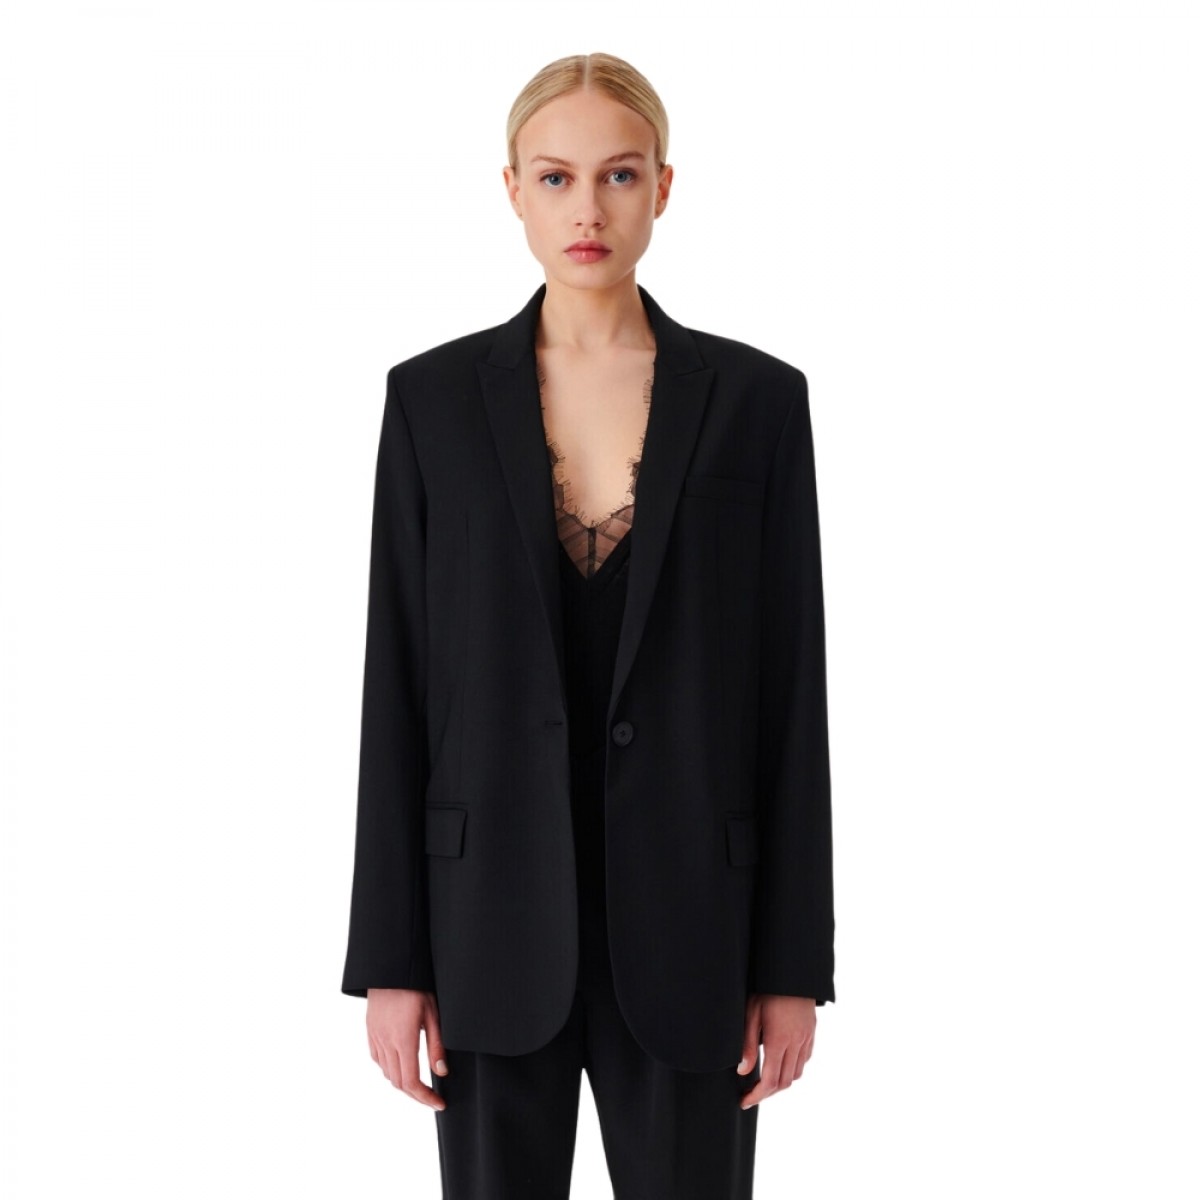 allan wool blazer jacket - black - model front